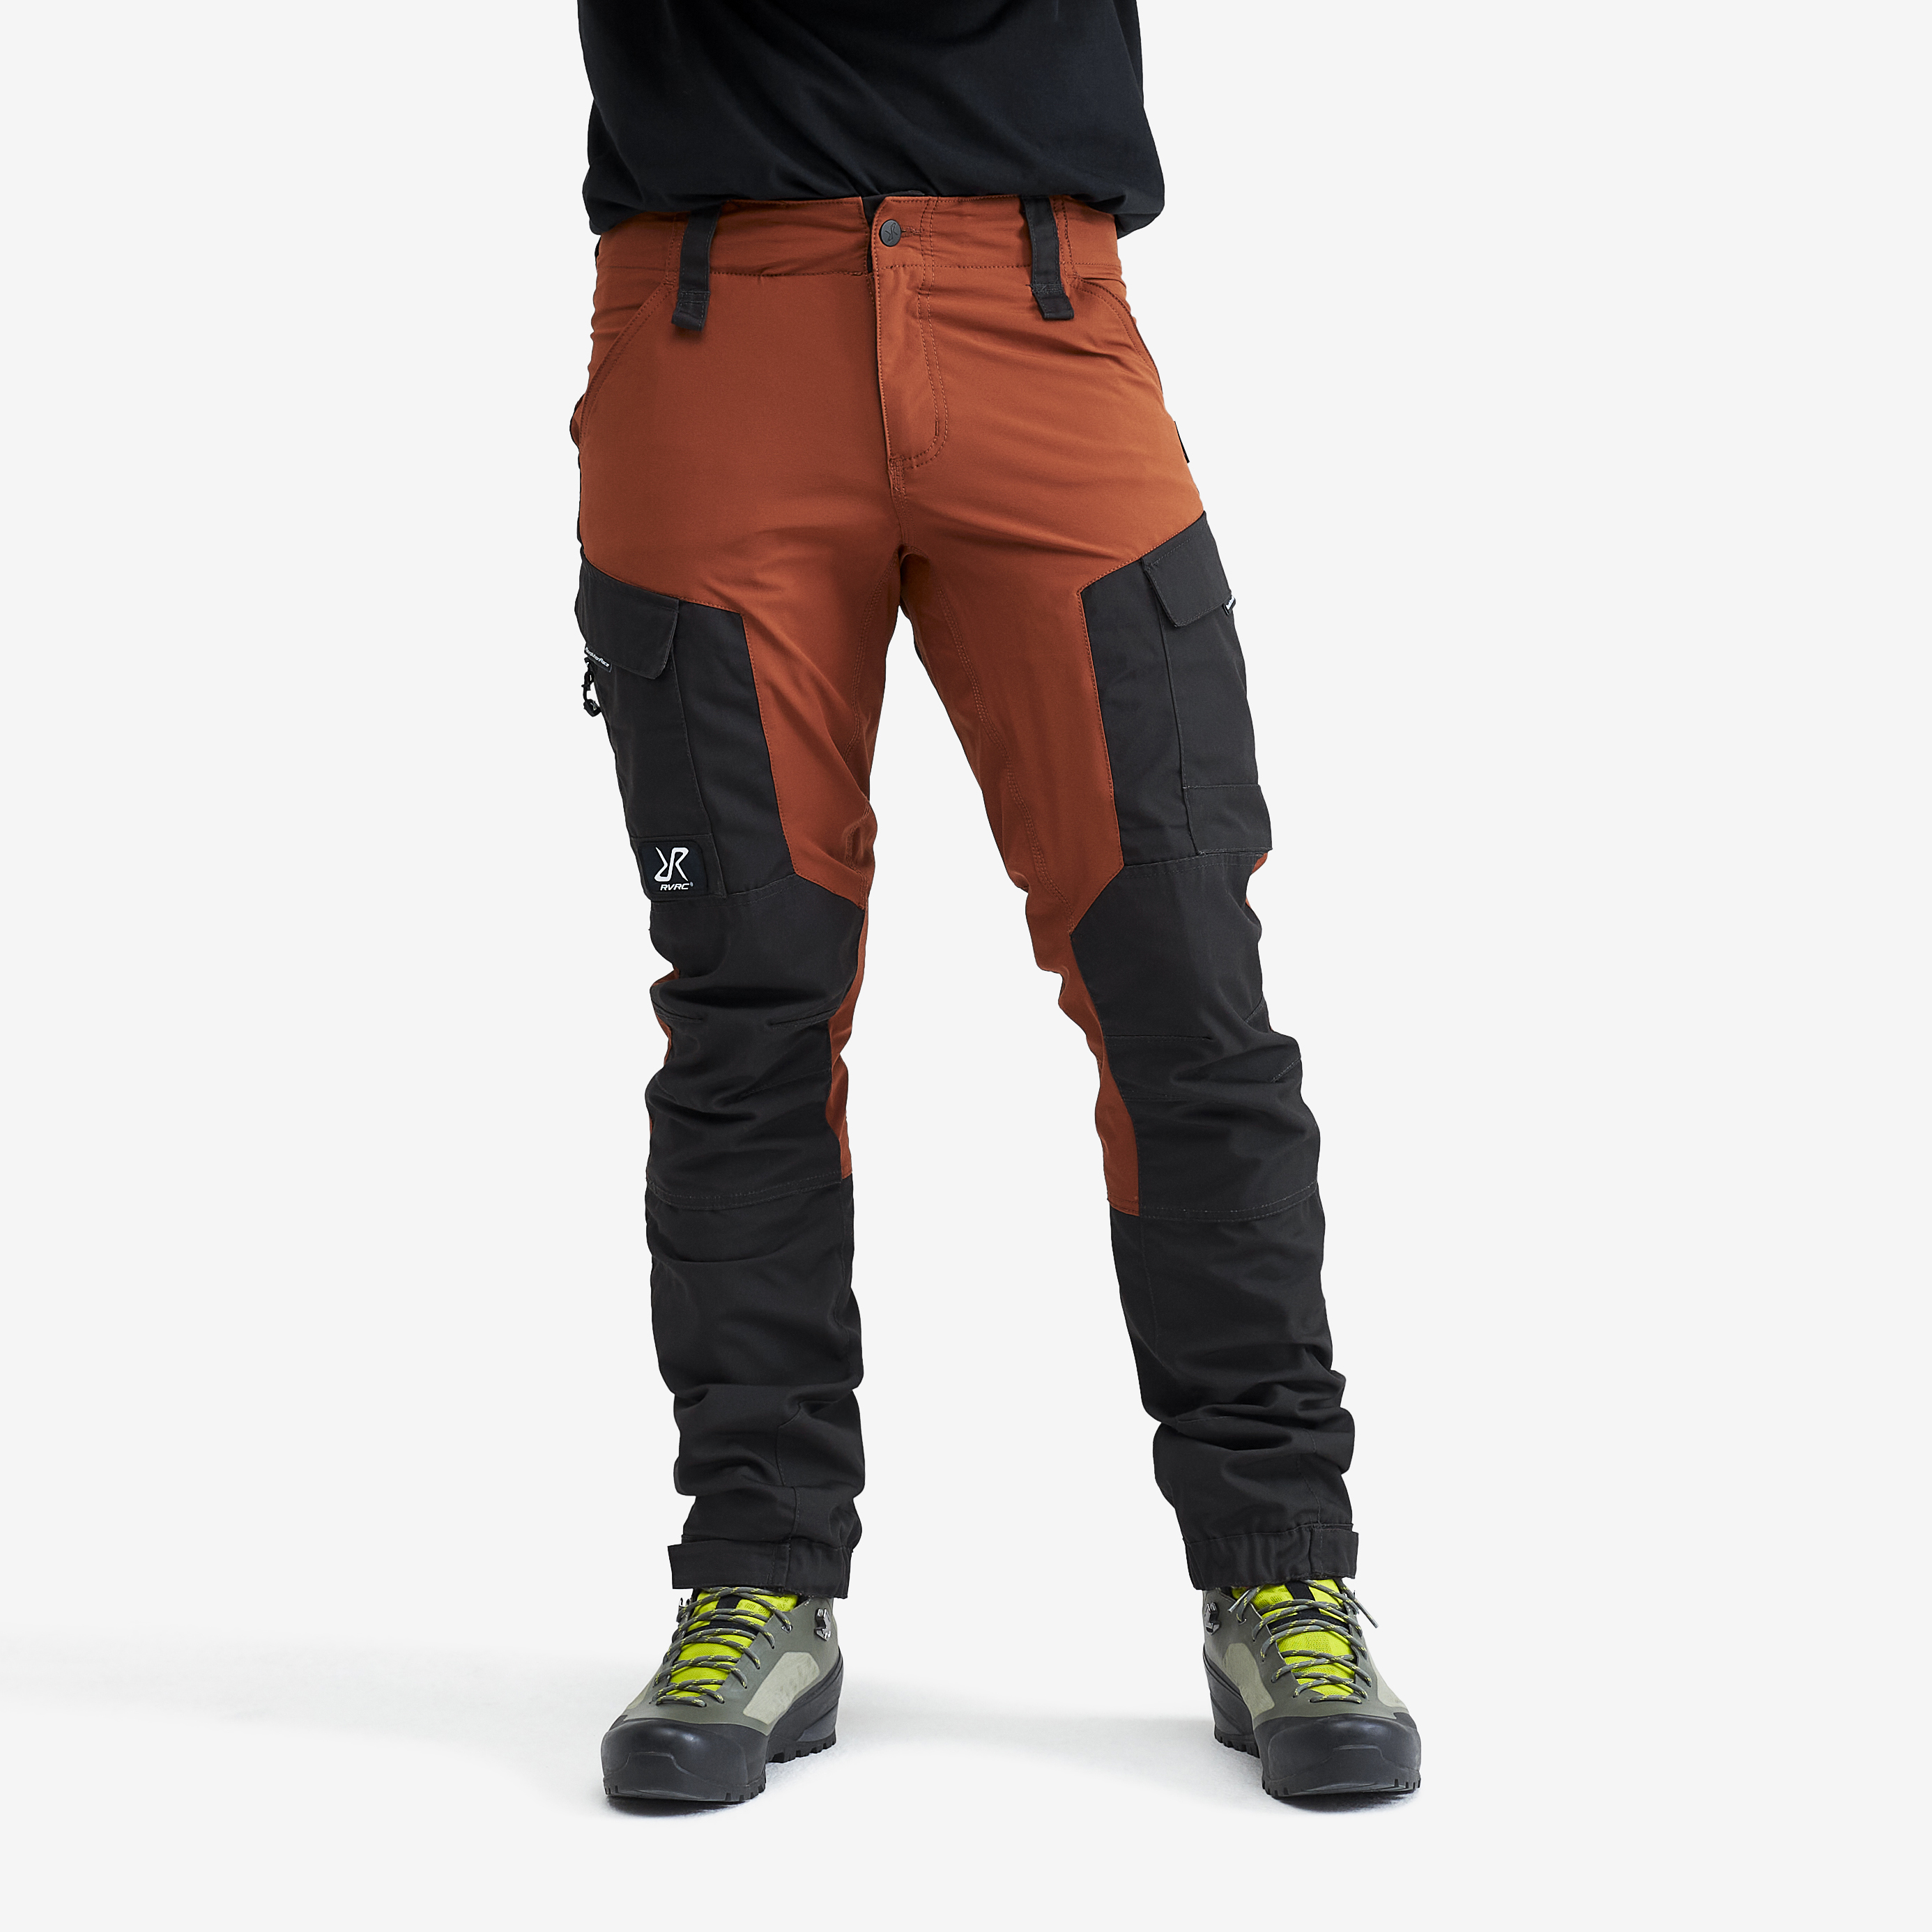 RVRC GP outdoorové kalhoty pro muže v oranžové barvě